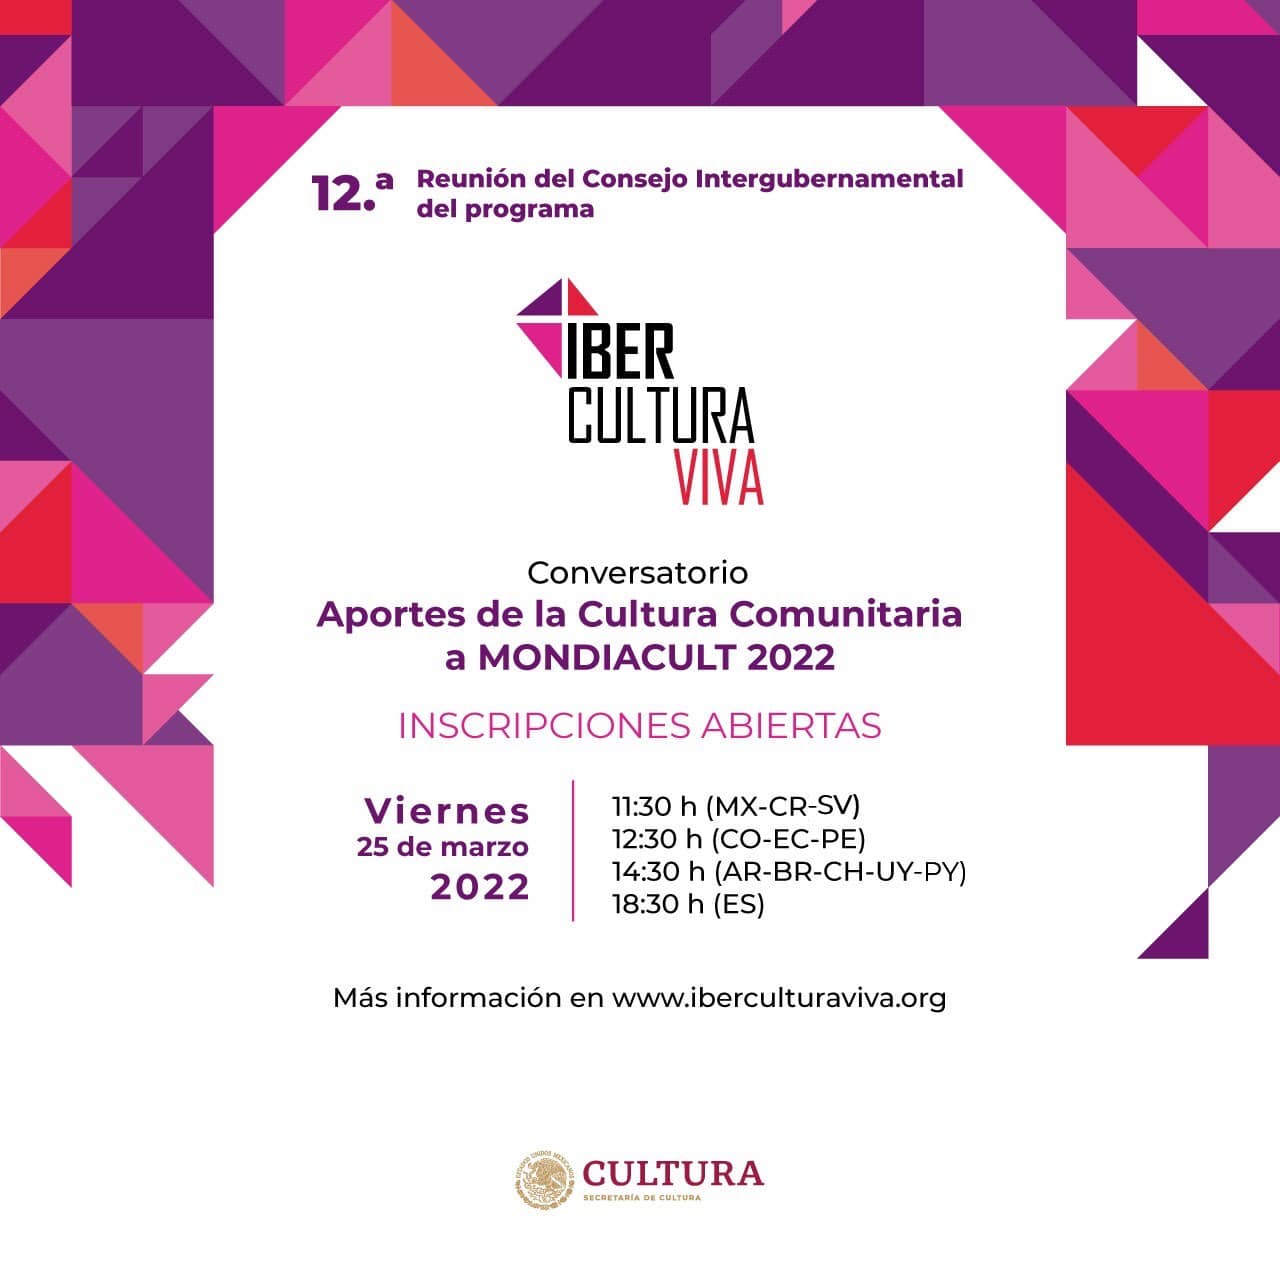 Organizaciones culturales comunitarias de Paraguay pueden participar del conversatorio “Aportes de la Cultura Comunitaria a Mondiacult 2022” imagen